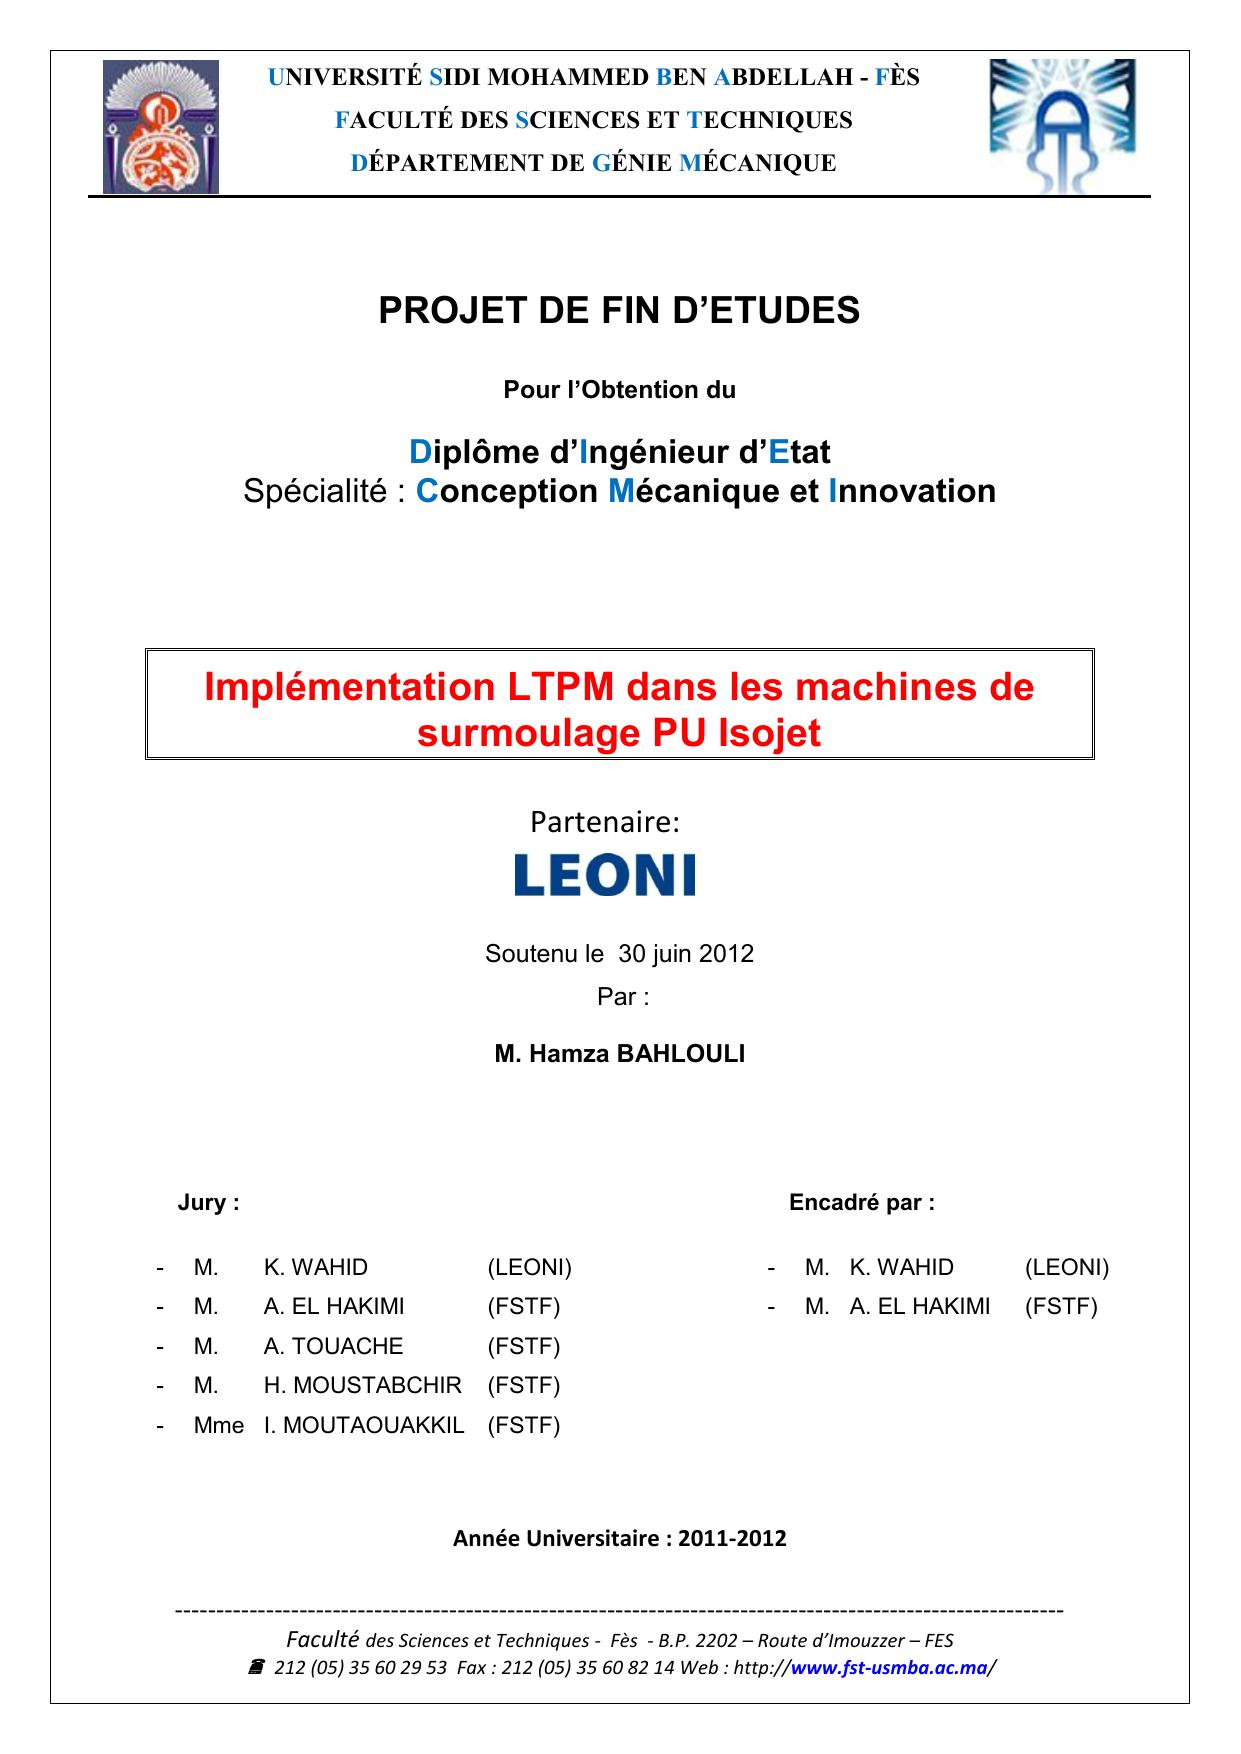 Implémentation LTPM dans les machines de surmoulage PU Isojet